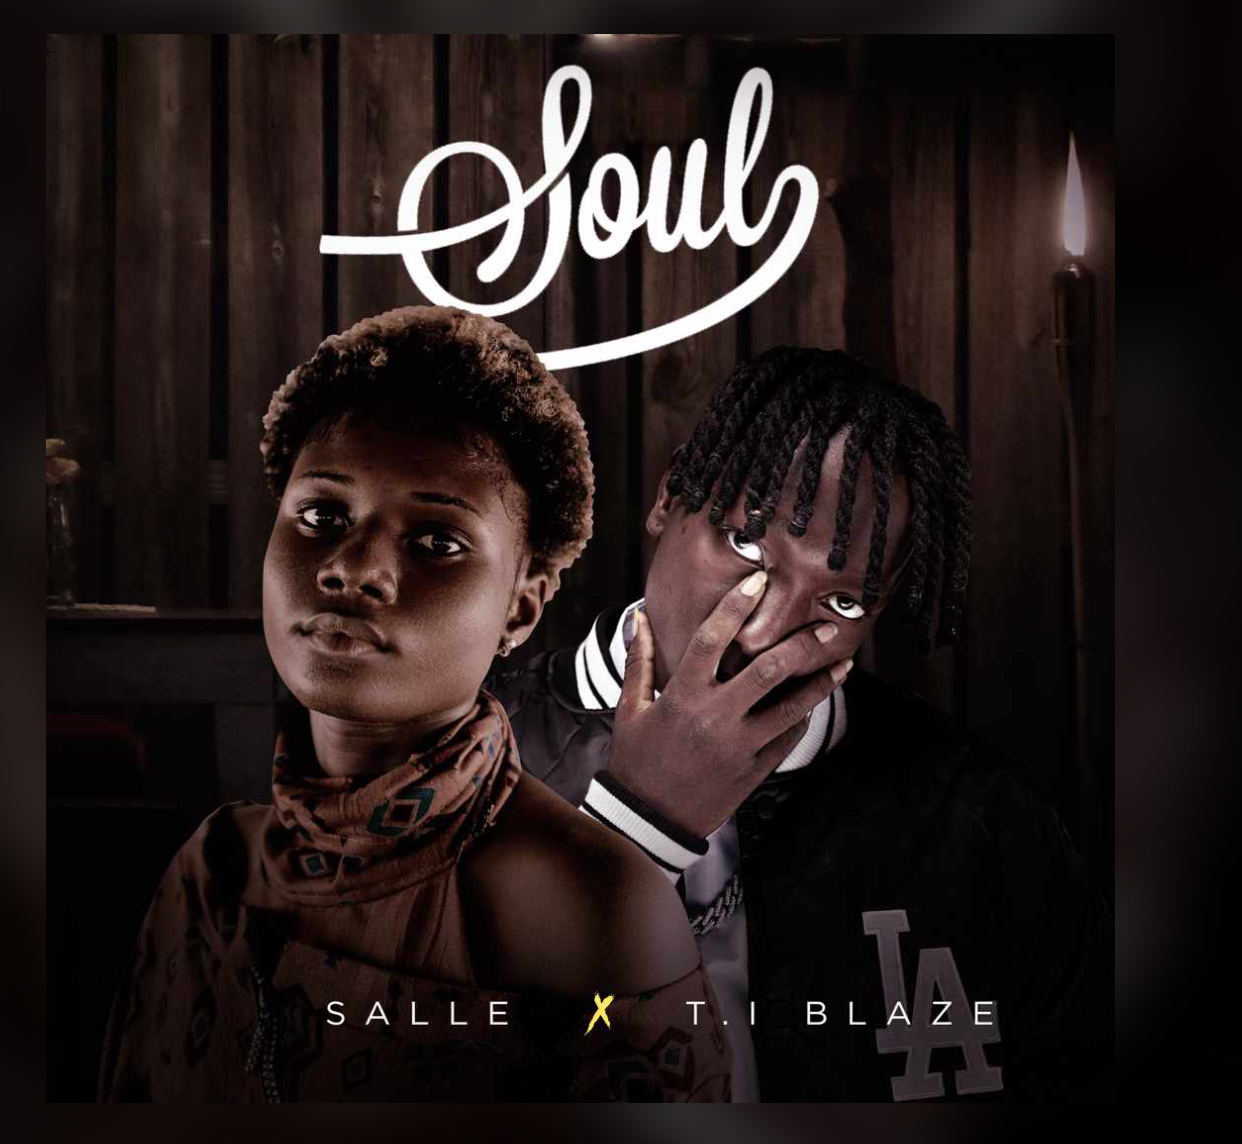 Salle Ft T.I Blaze - Soul